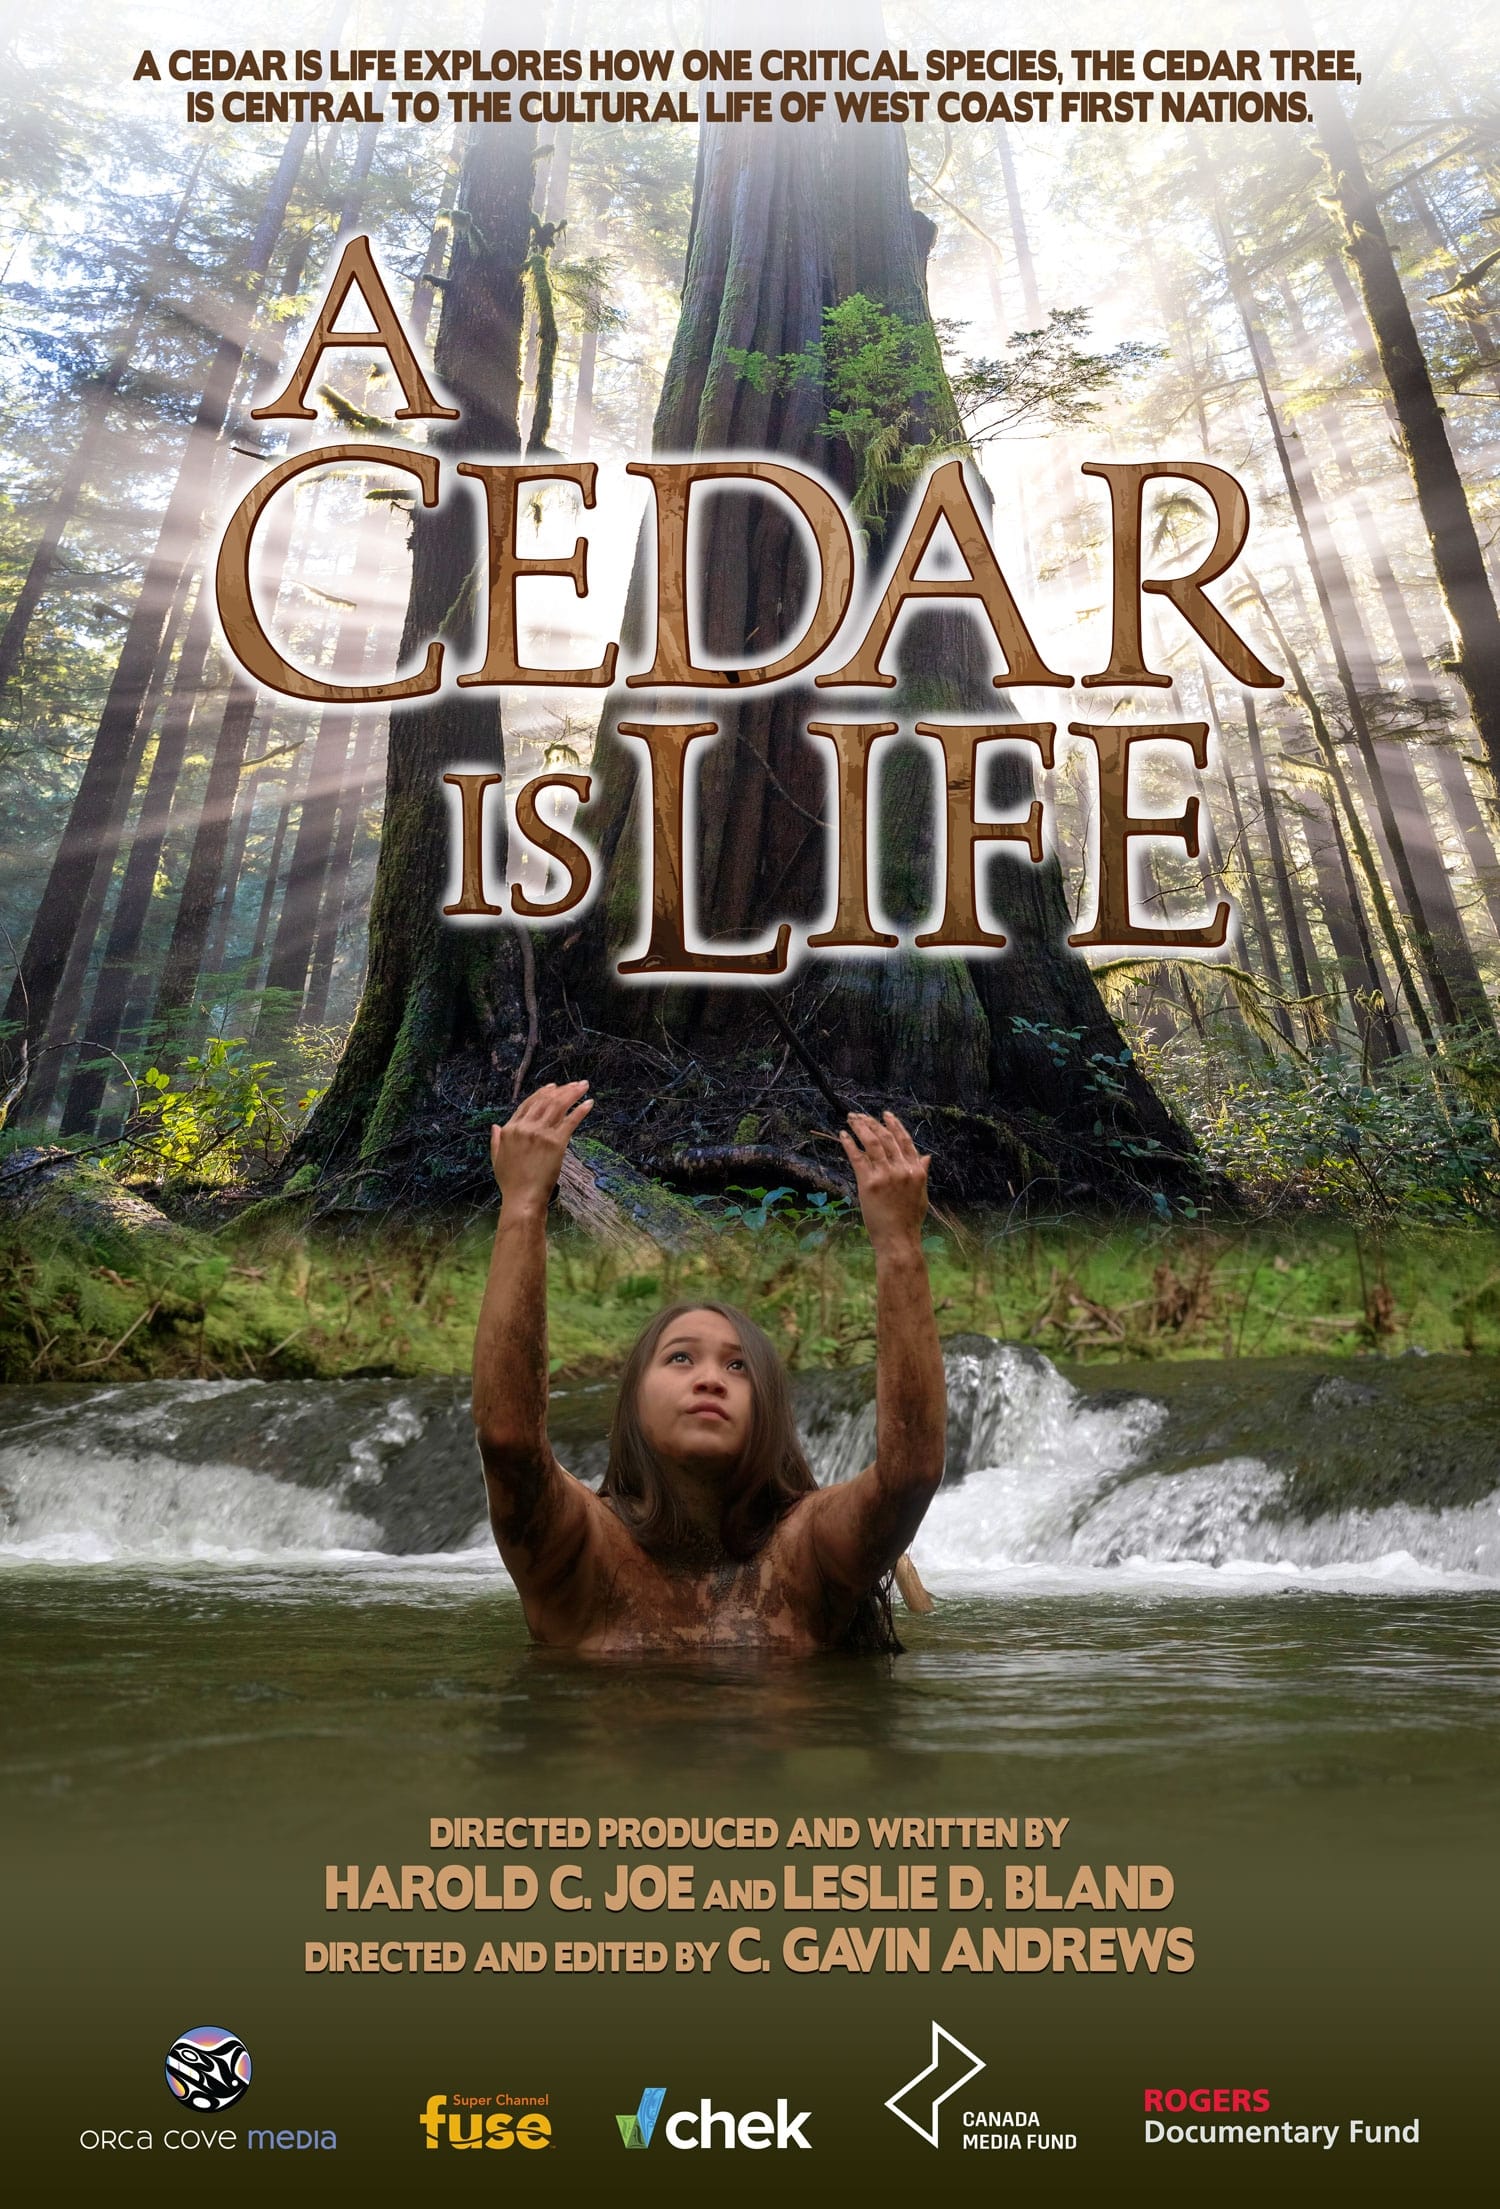 A Cedar Is Life